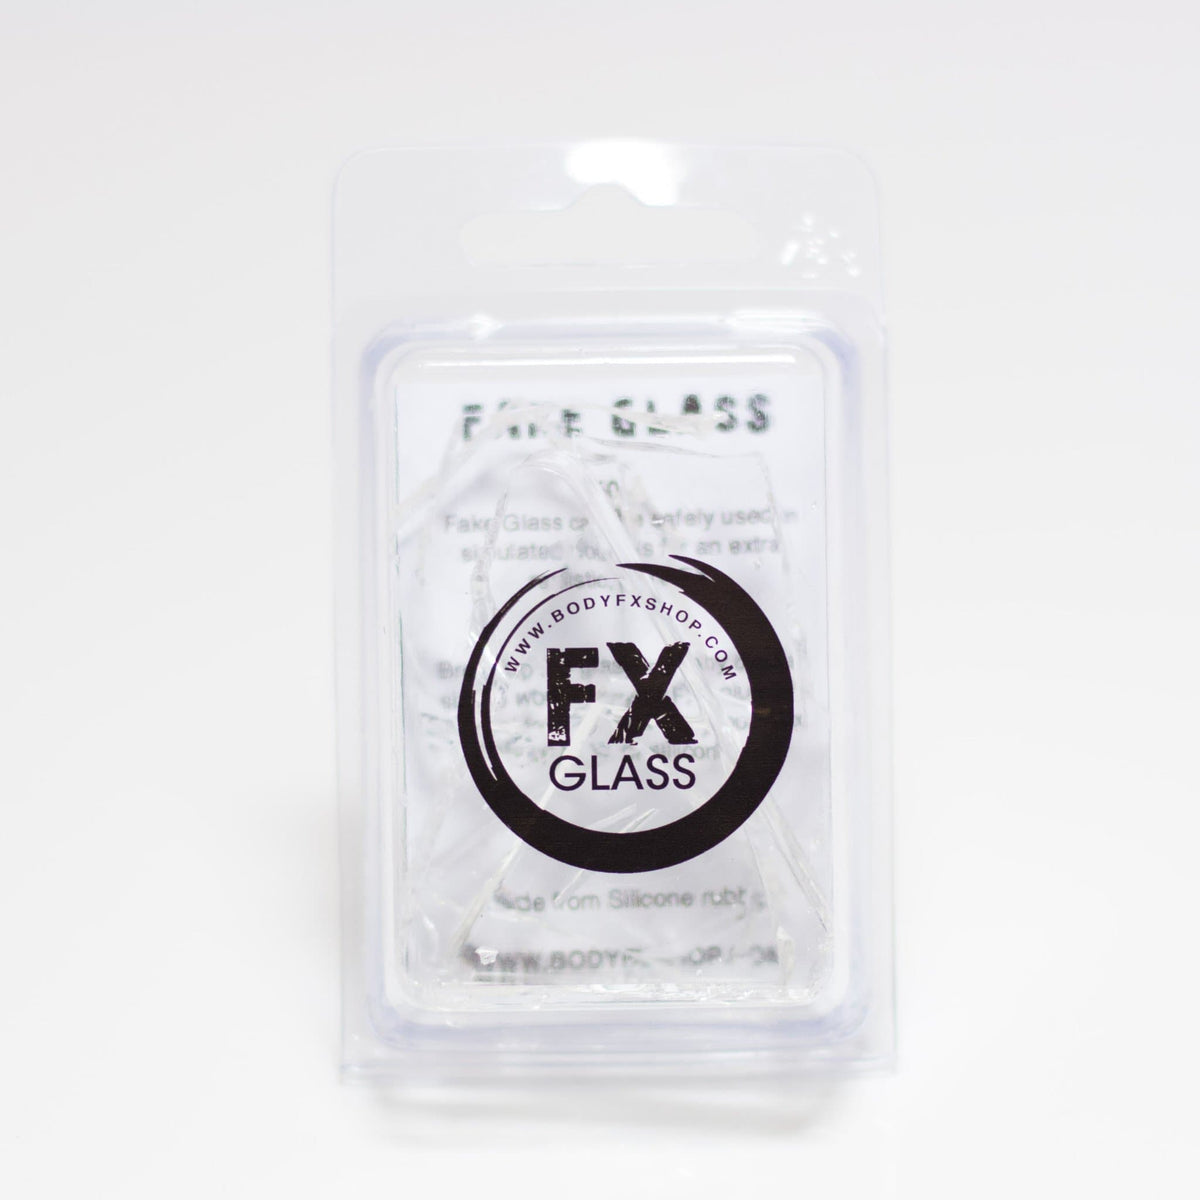 FX FAKE GLASS